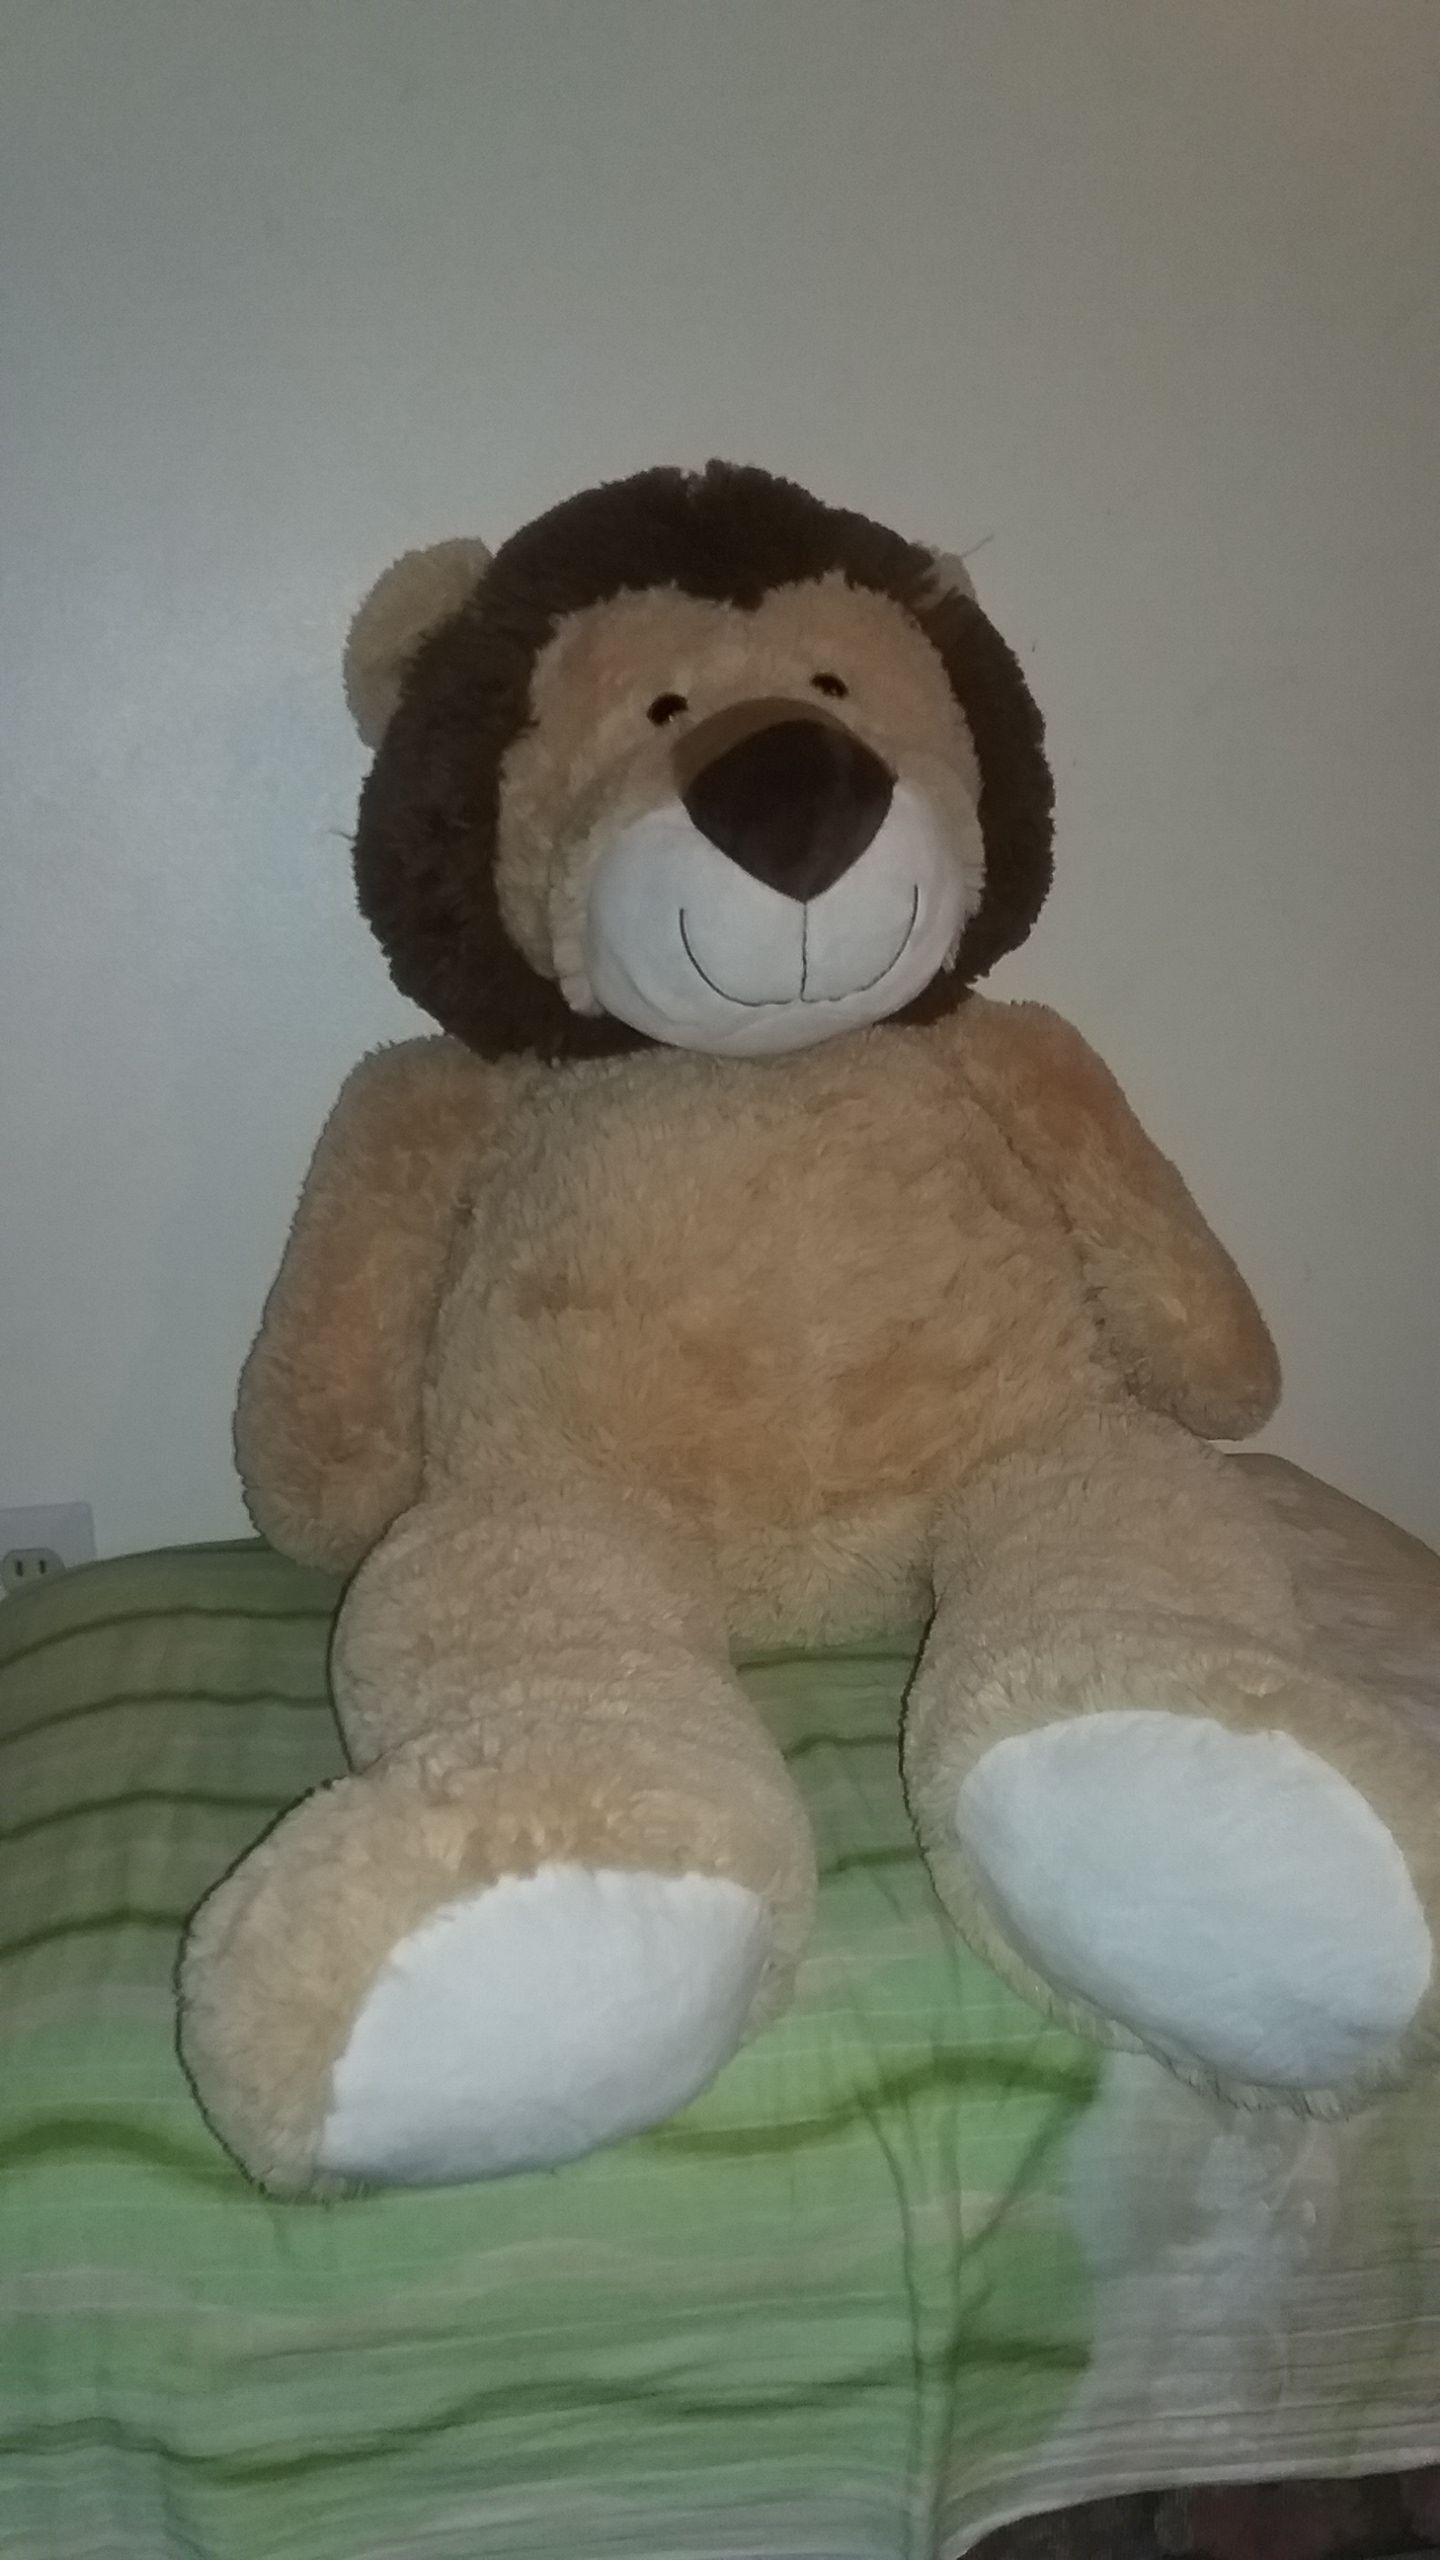 Big lion teddy bear